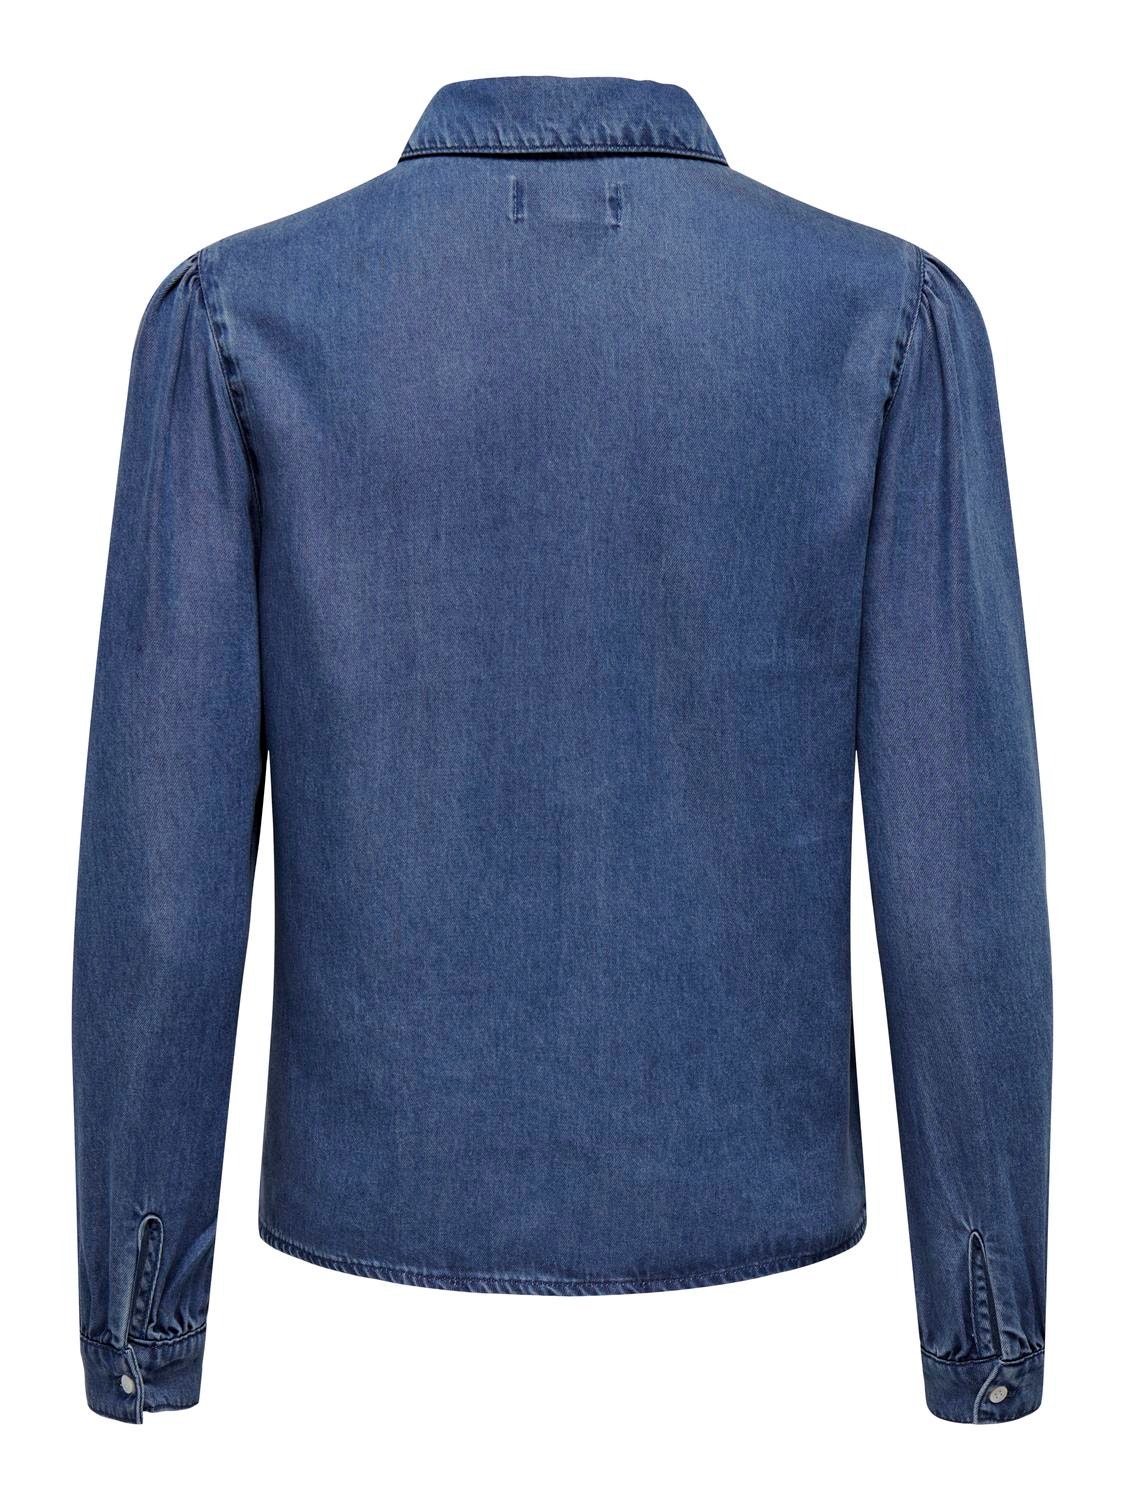 ONLY Chemises Regular Fit Col chemise Poignets boutonnés Manches bouffantes -Medium Blue Denim - 15218685